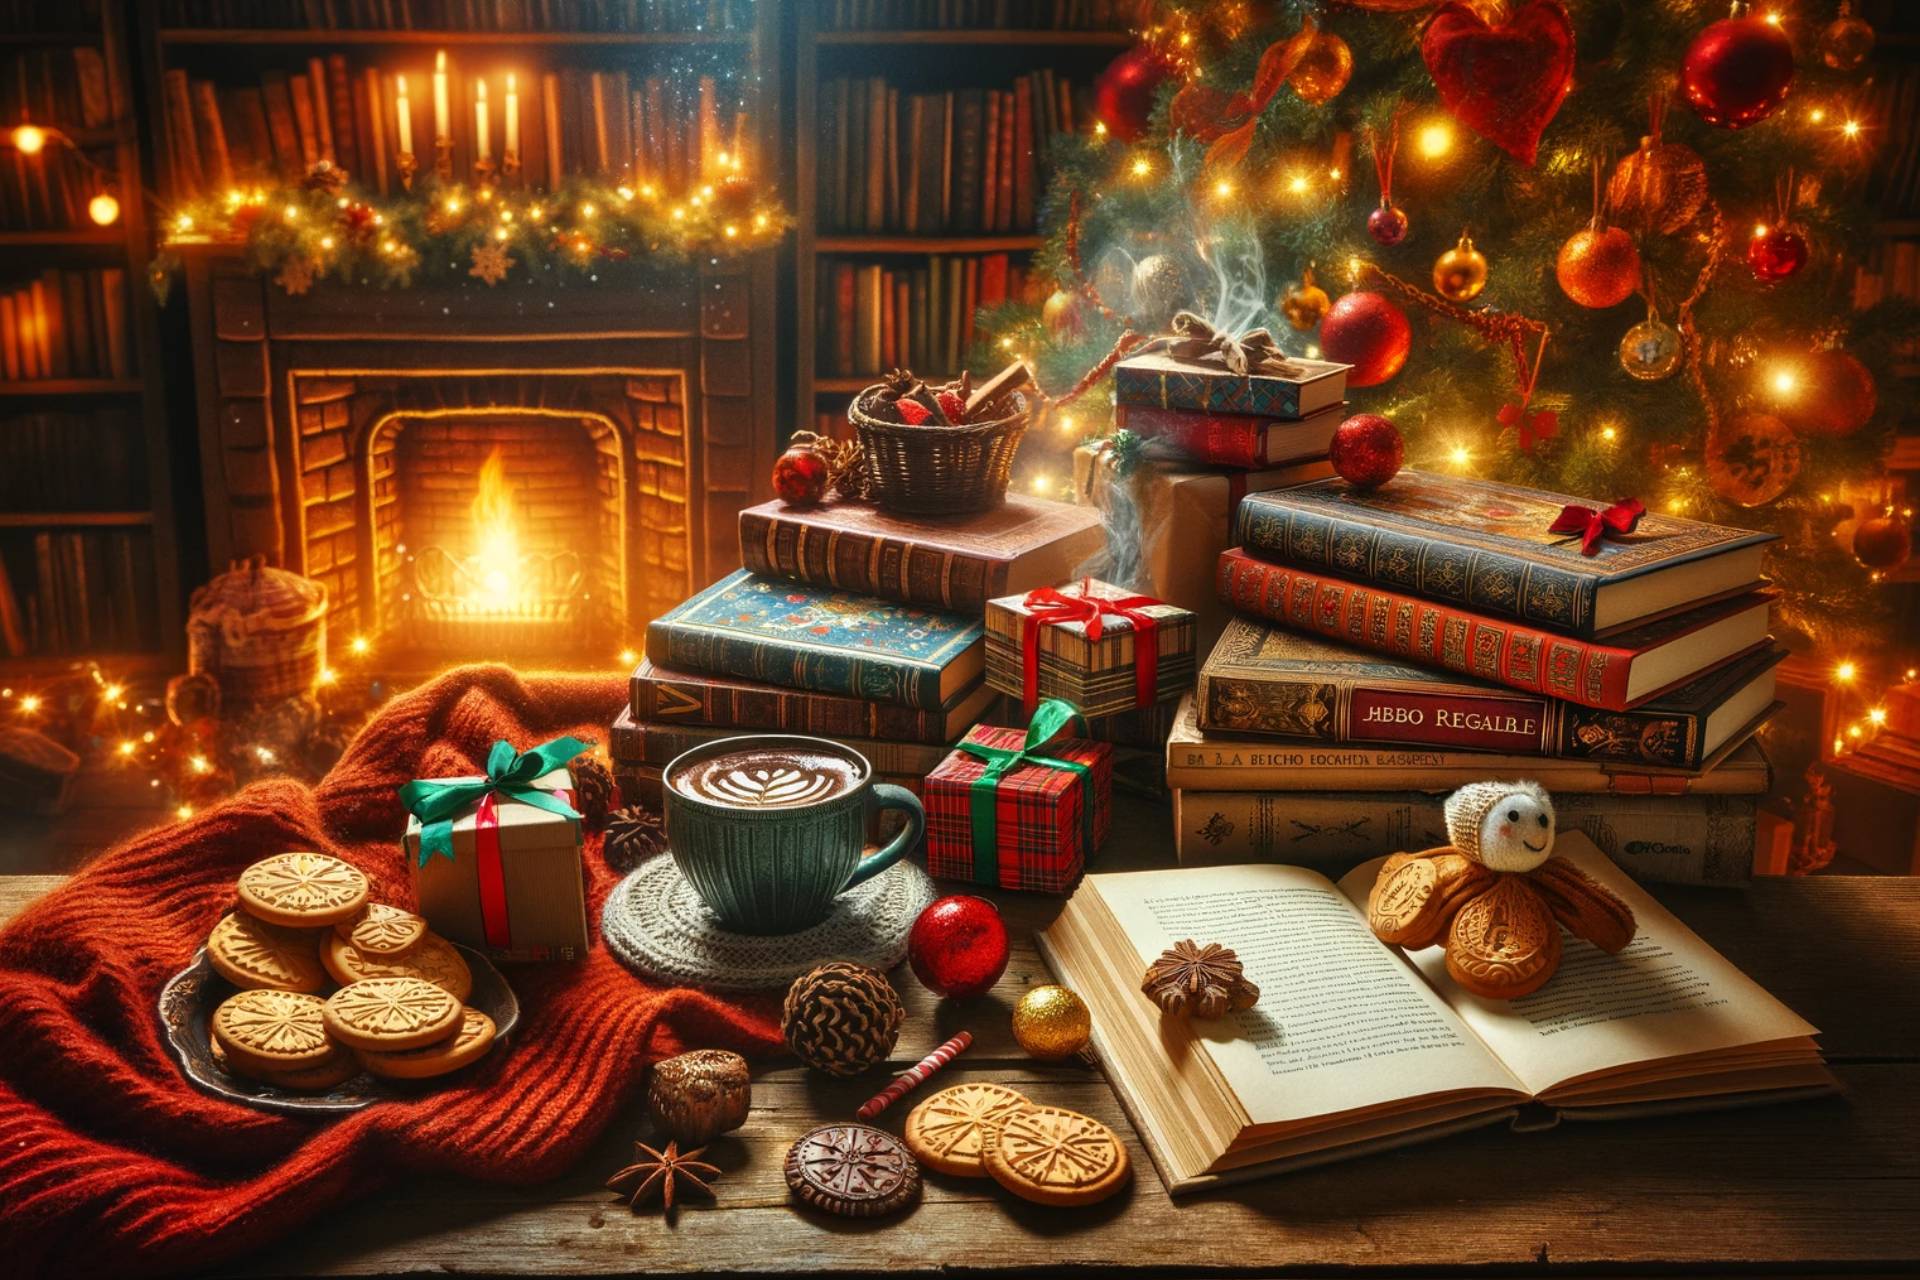 I migliori libri da leggere e regalare questo Natale